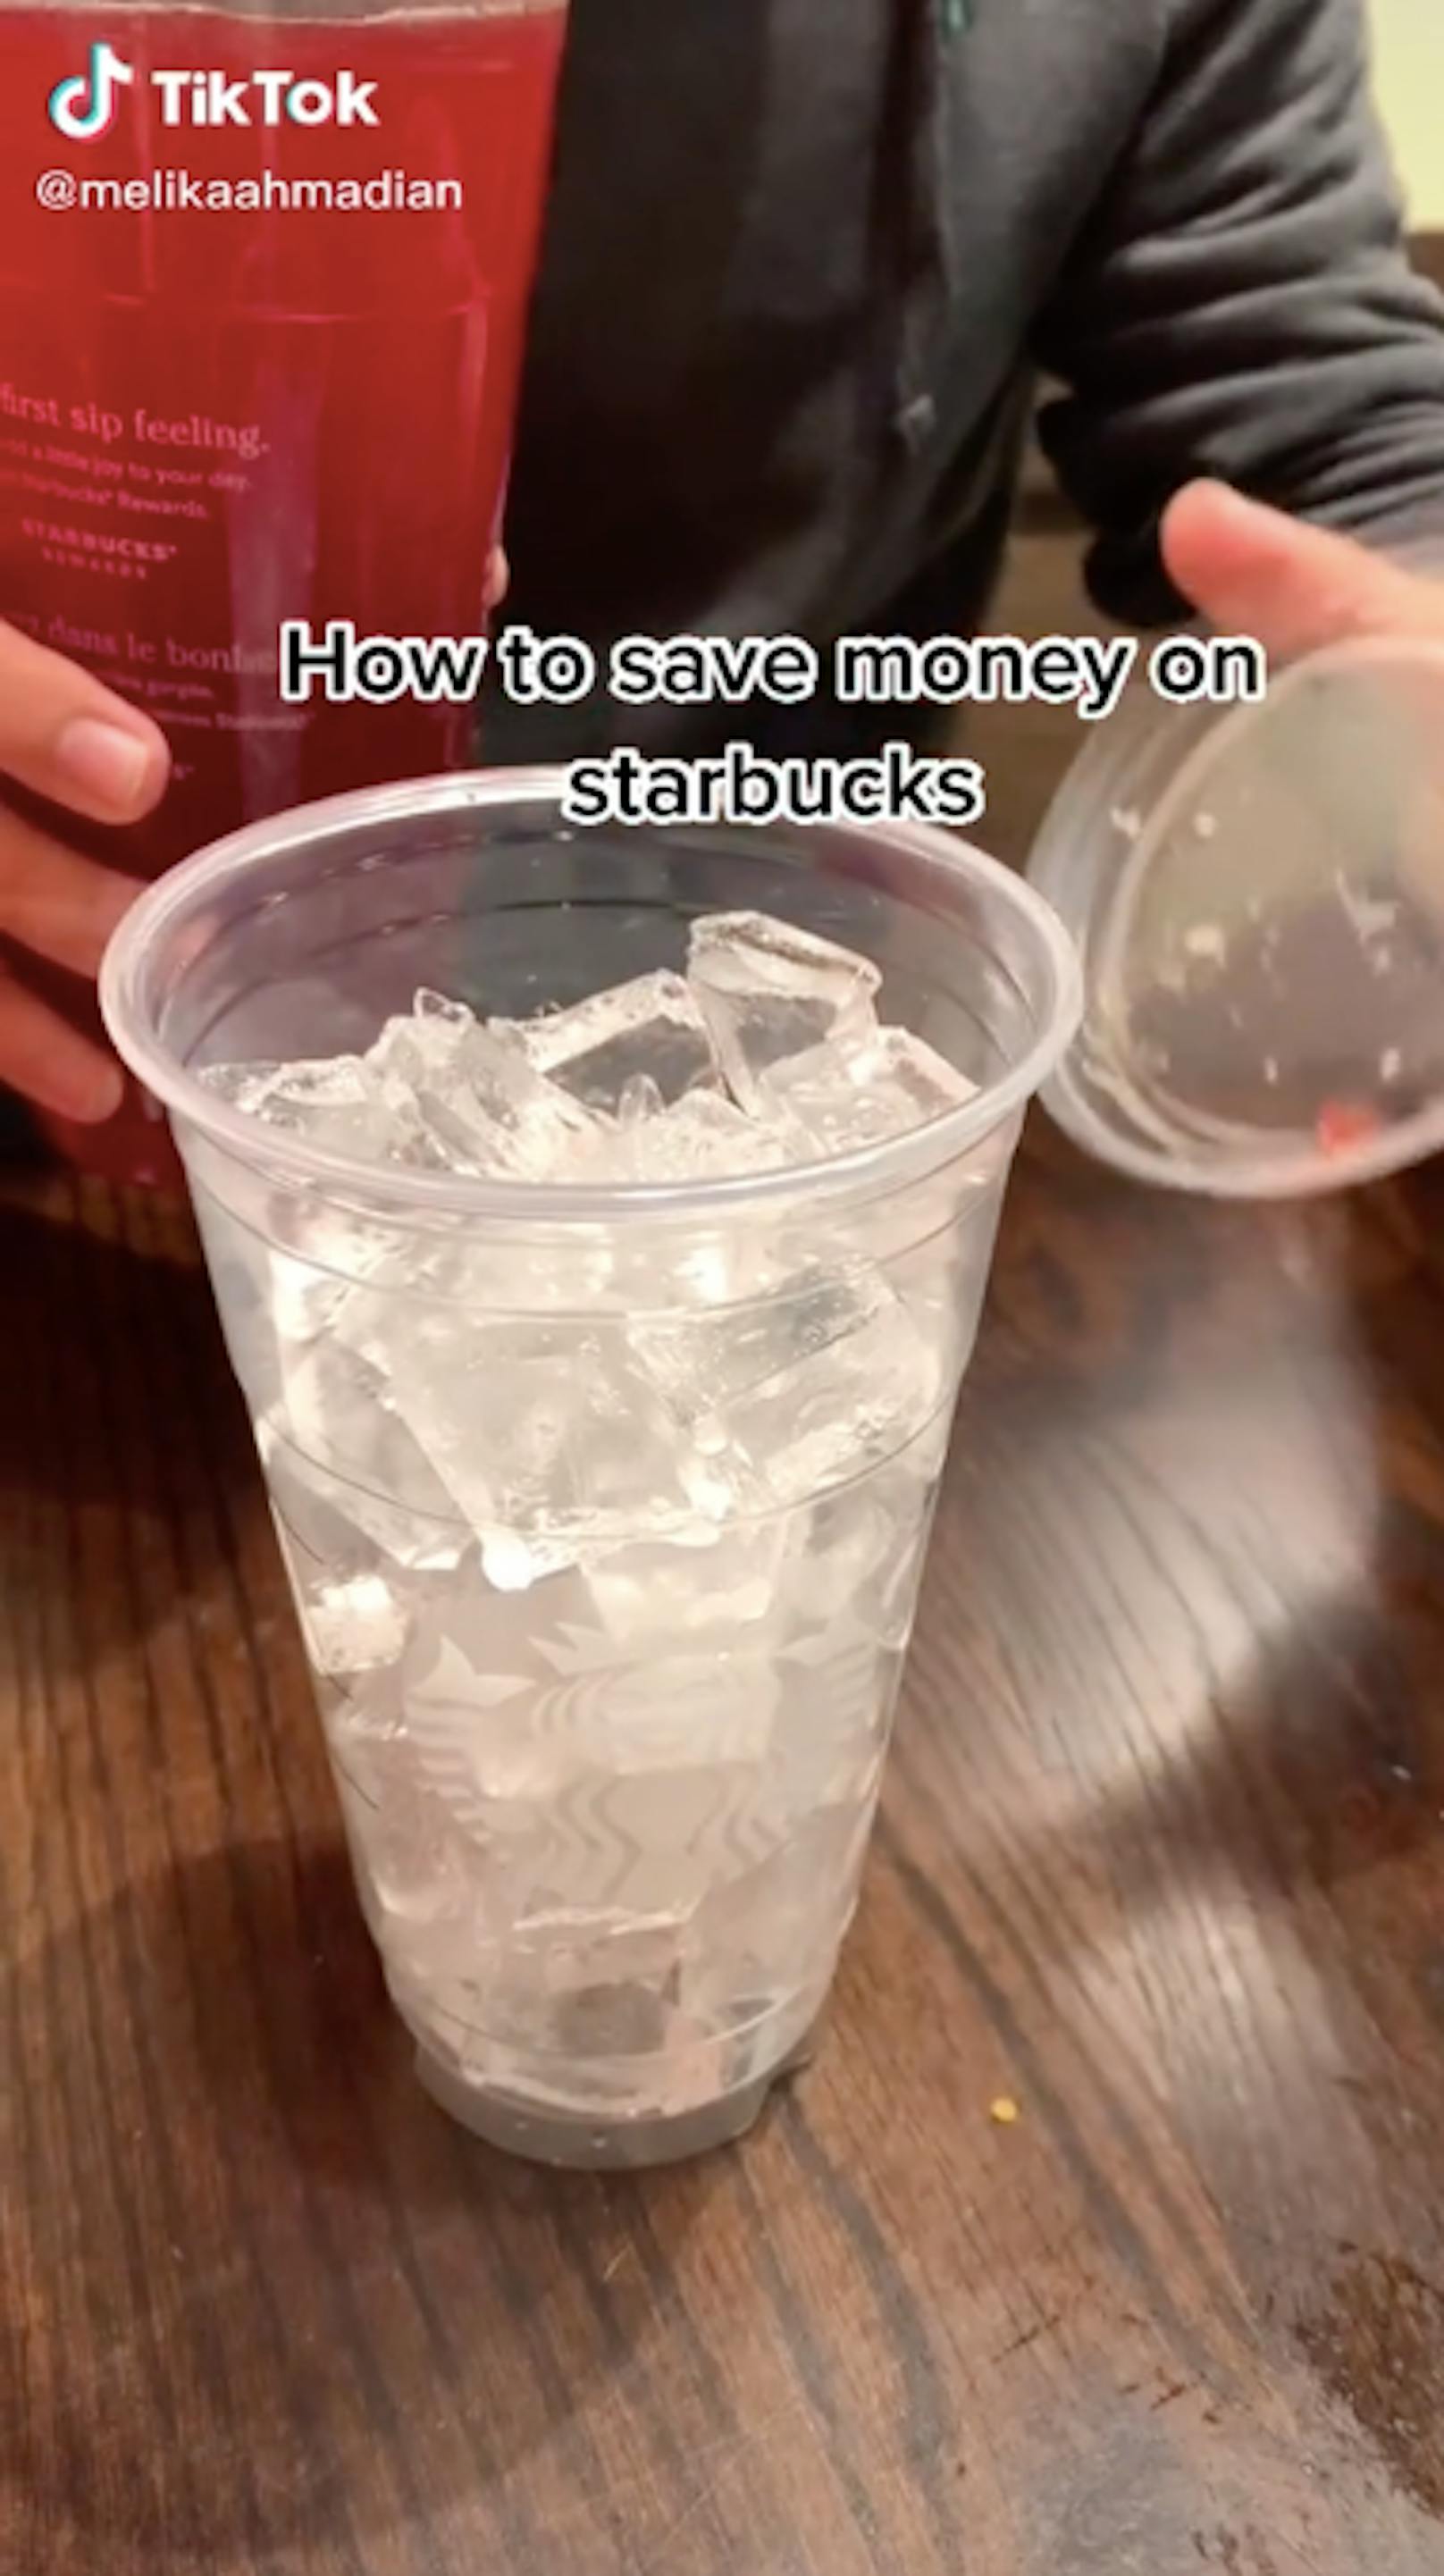 Starbucks-Barista&nbsp;Melika Ahmadian verrät auf TikTok: In einem größeren Becher das Getränk ohne Eis bestellen und in einem kleineren nur Eis.